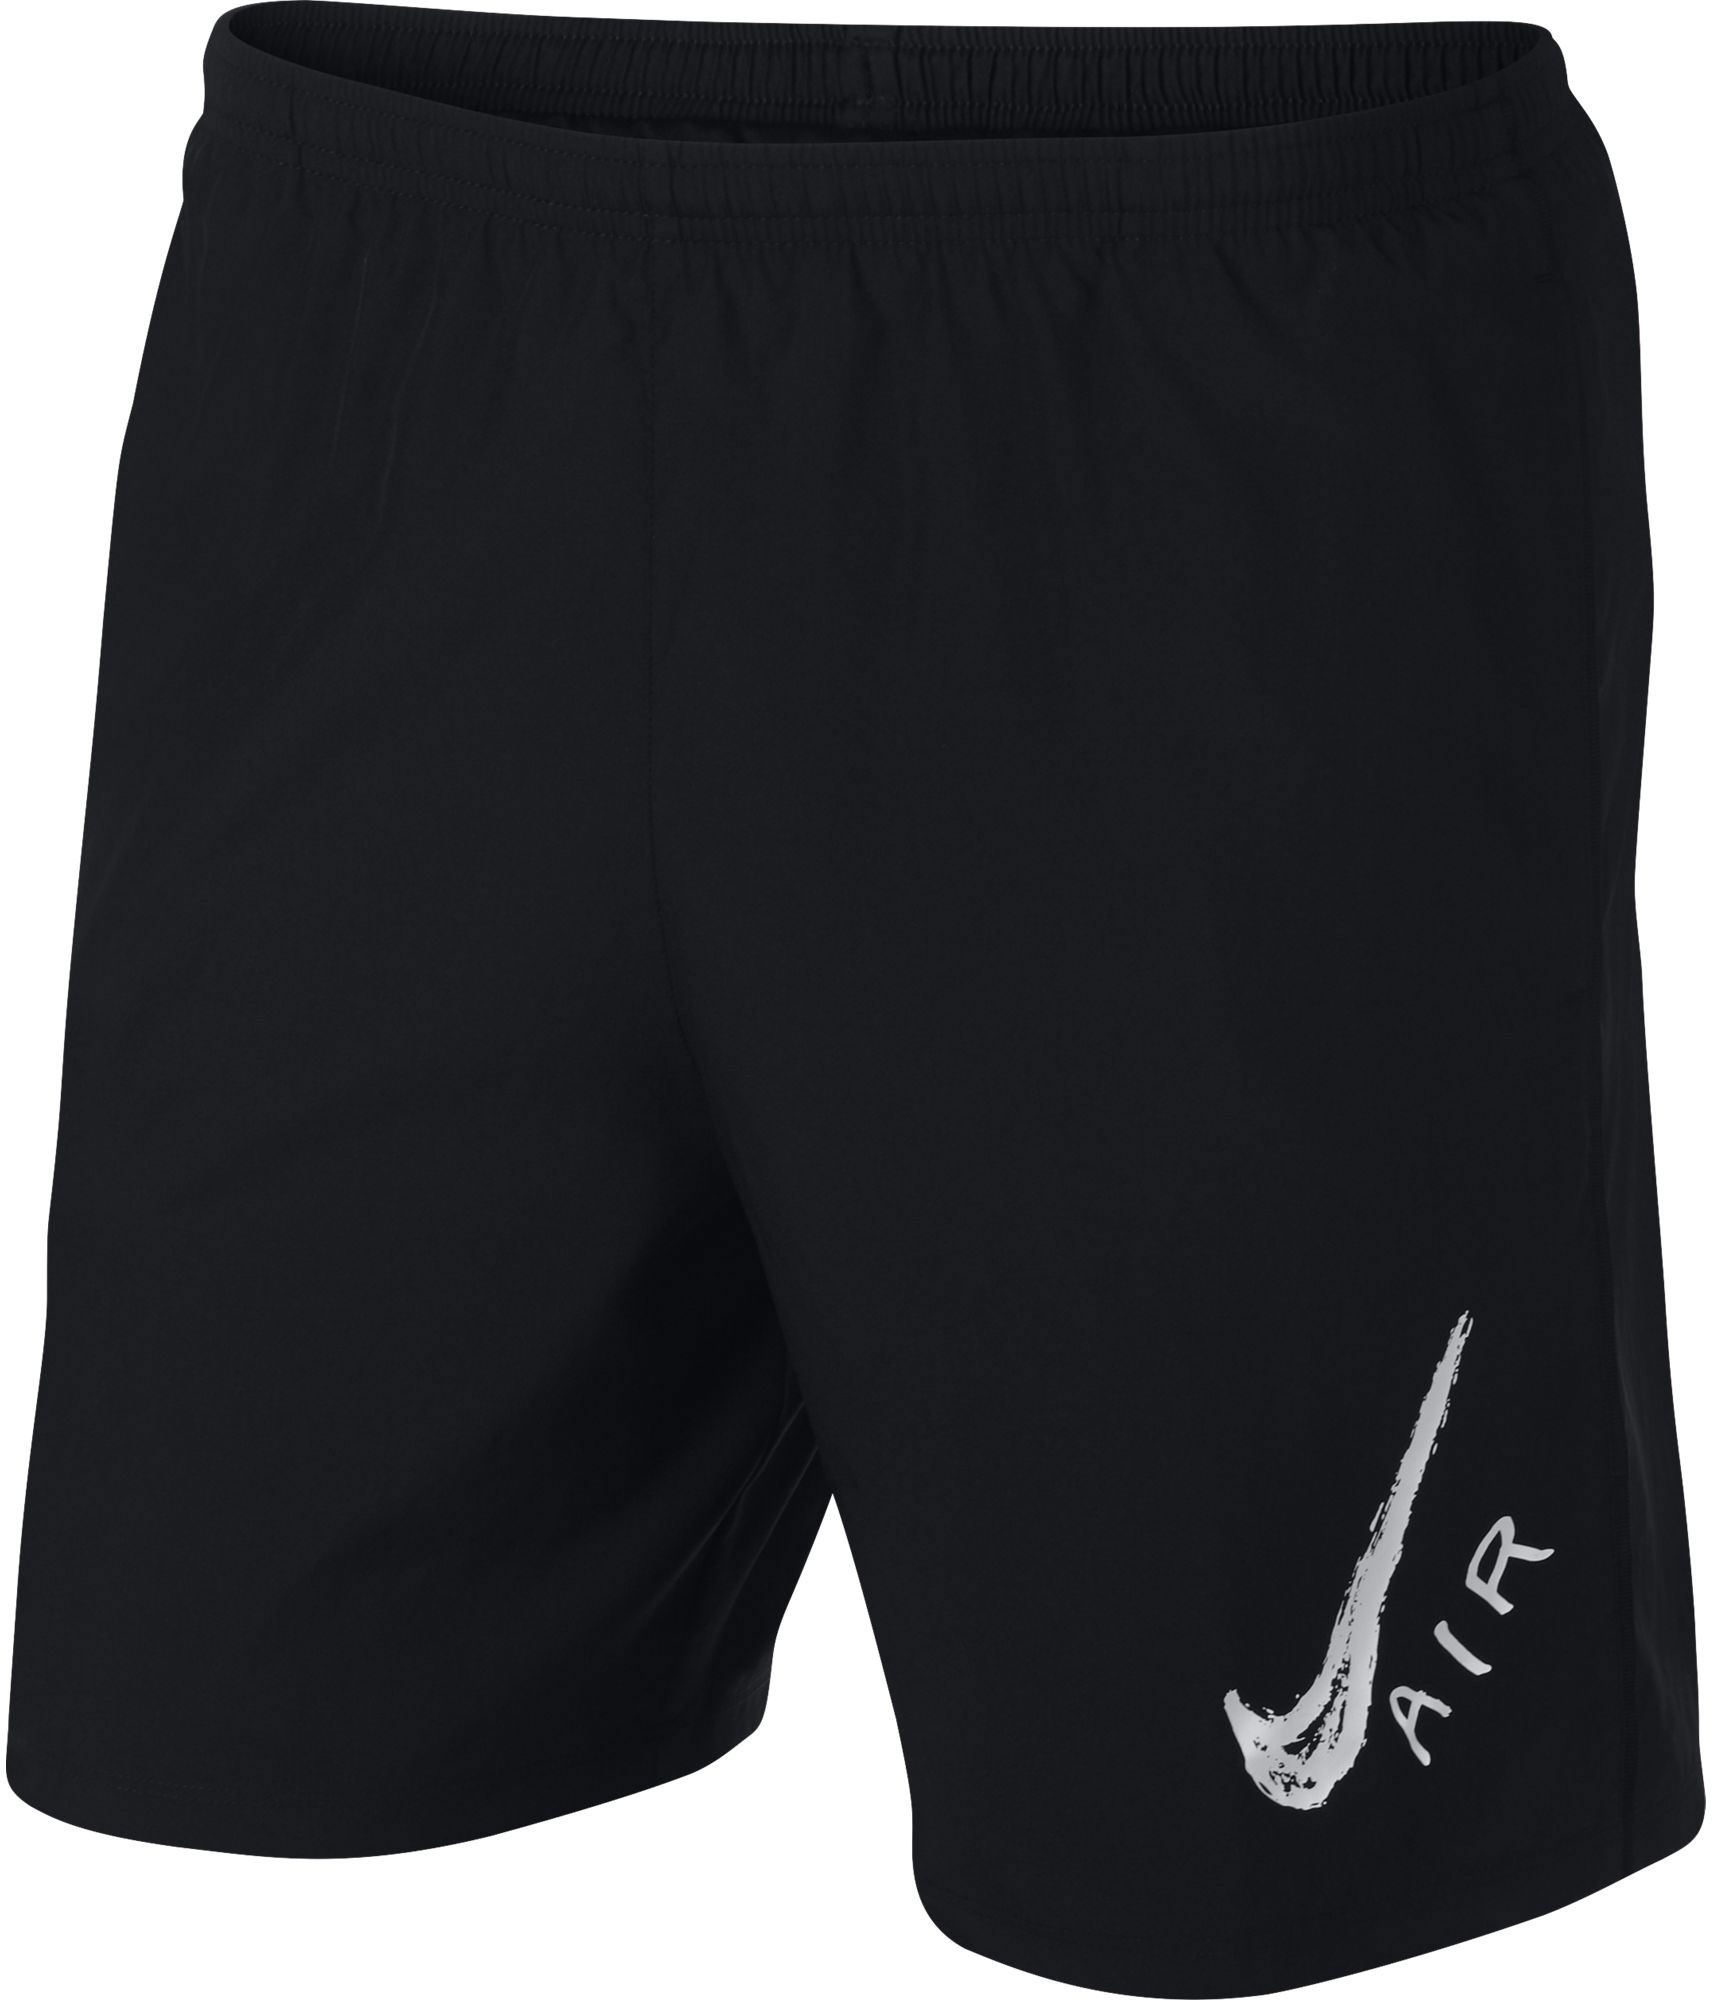 nike runner shorts in black